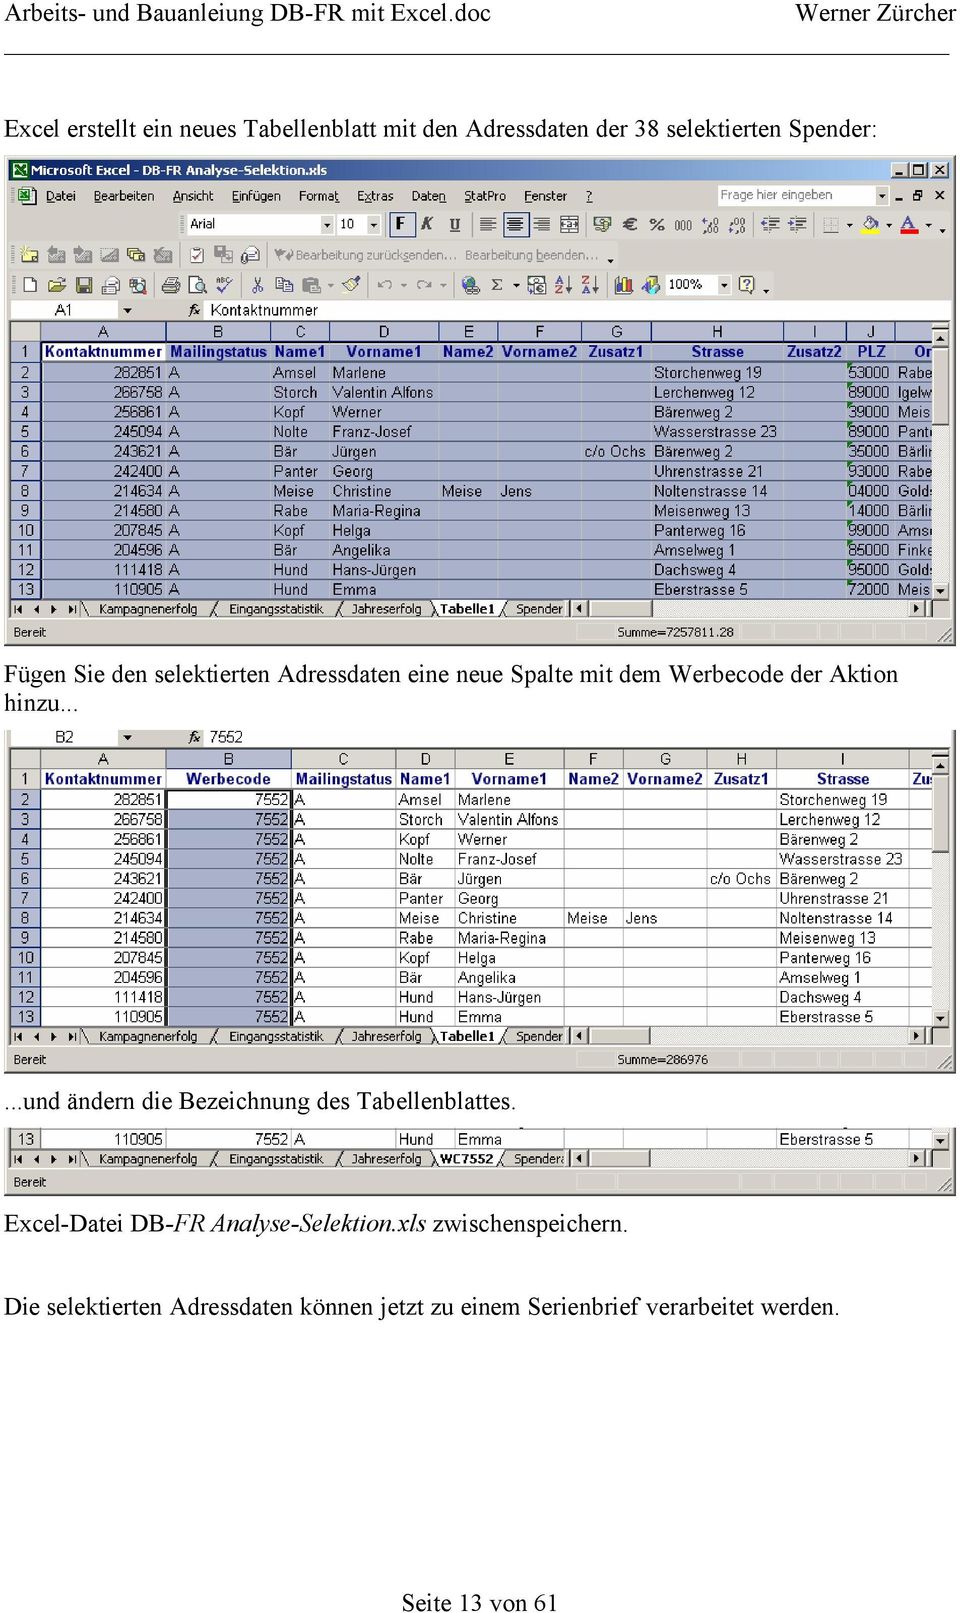 .....und ändern die Bezeichnung des Tabellenblattes. Excel-Datei DB-FR Analyse-Selektion.